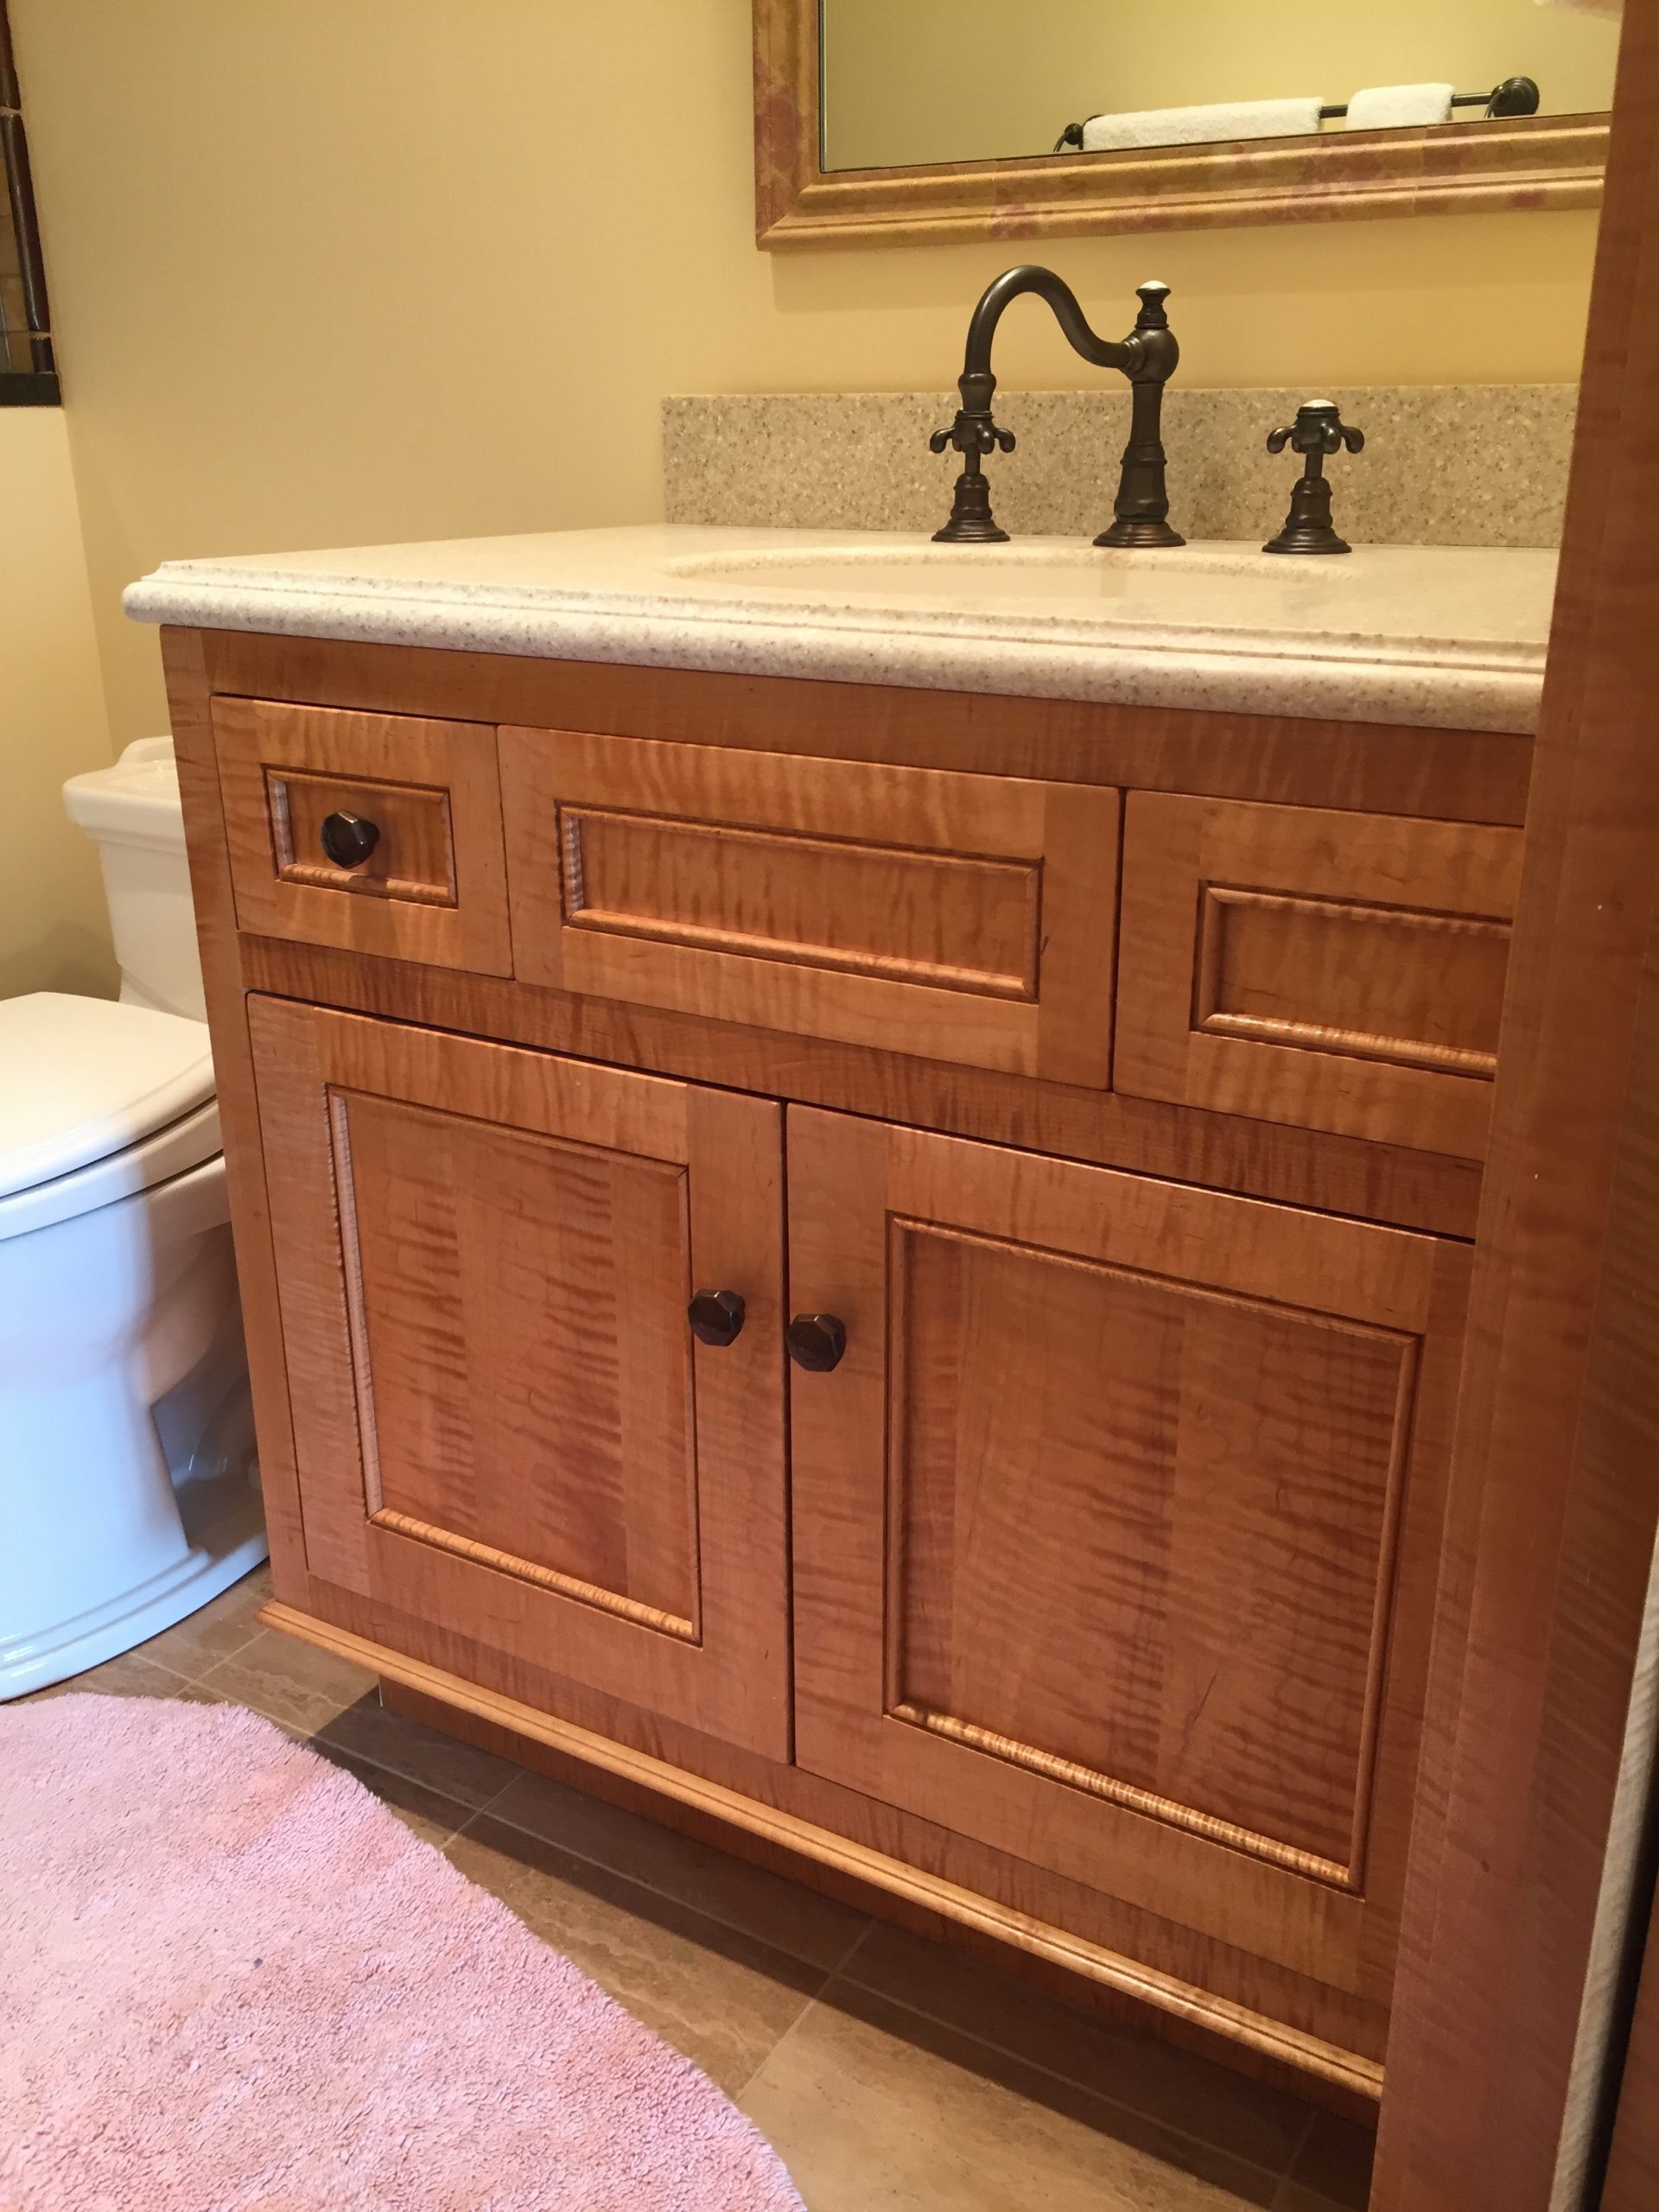 Figured maple Bathroom Vanity